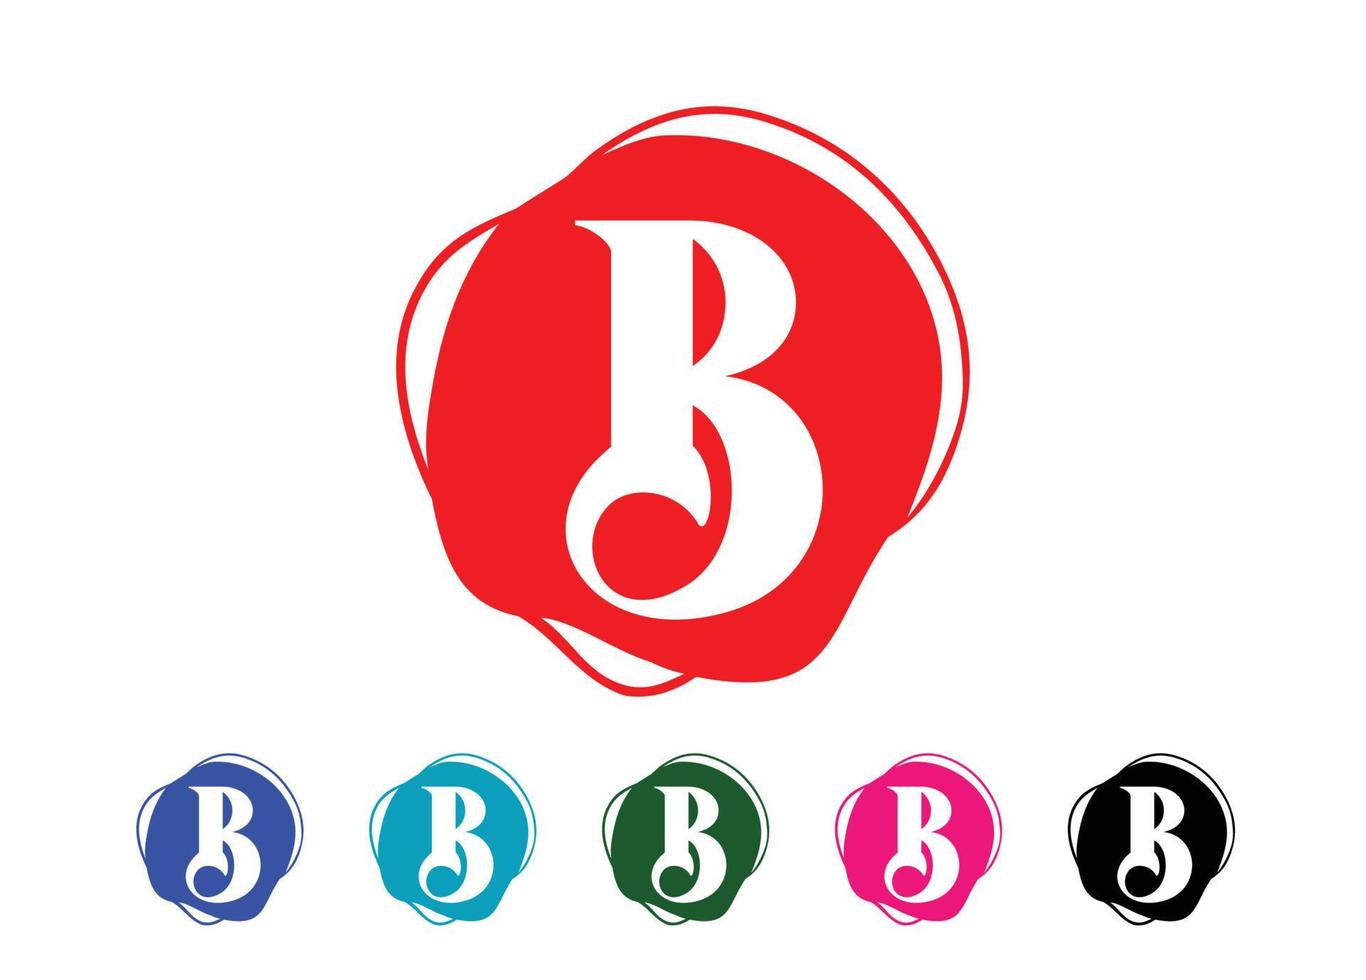 modèle de conception de logo et icône lettre b vecteur